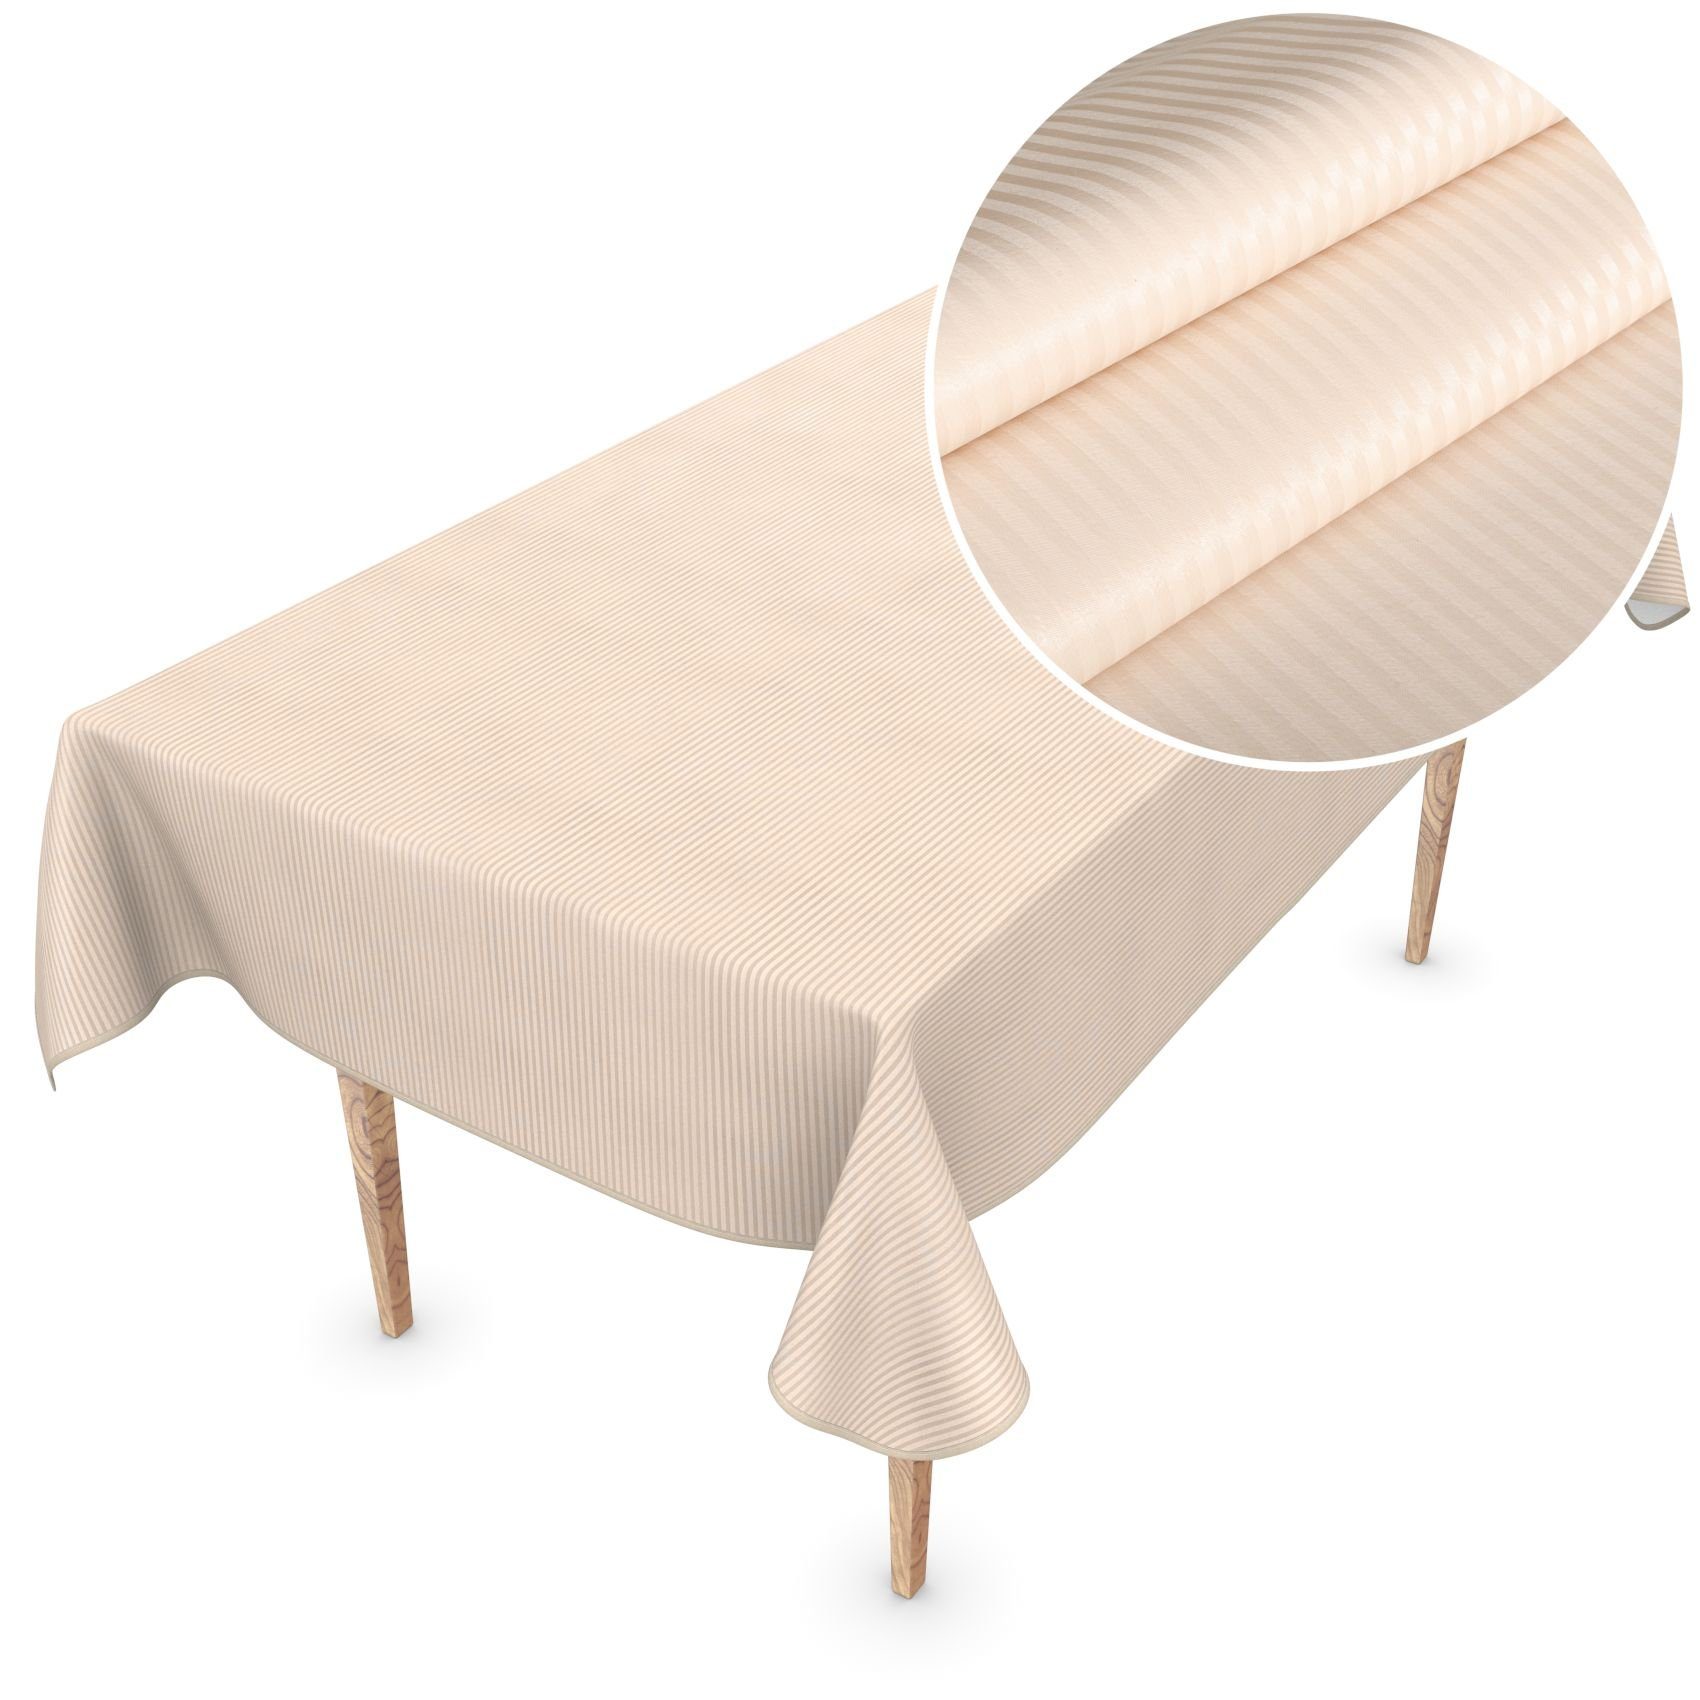 ANRO Tischdecke Wachstuchtischdecke Premium Gartentischdecke, Geprägt Damast 155x300cm wasserabweisend